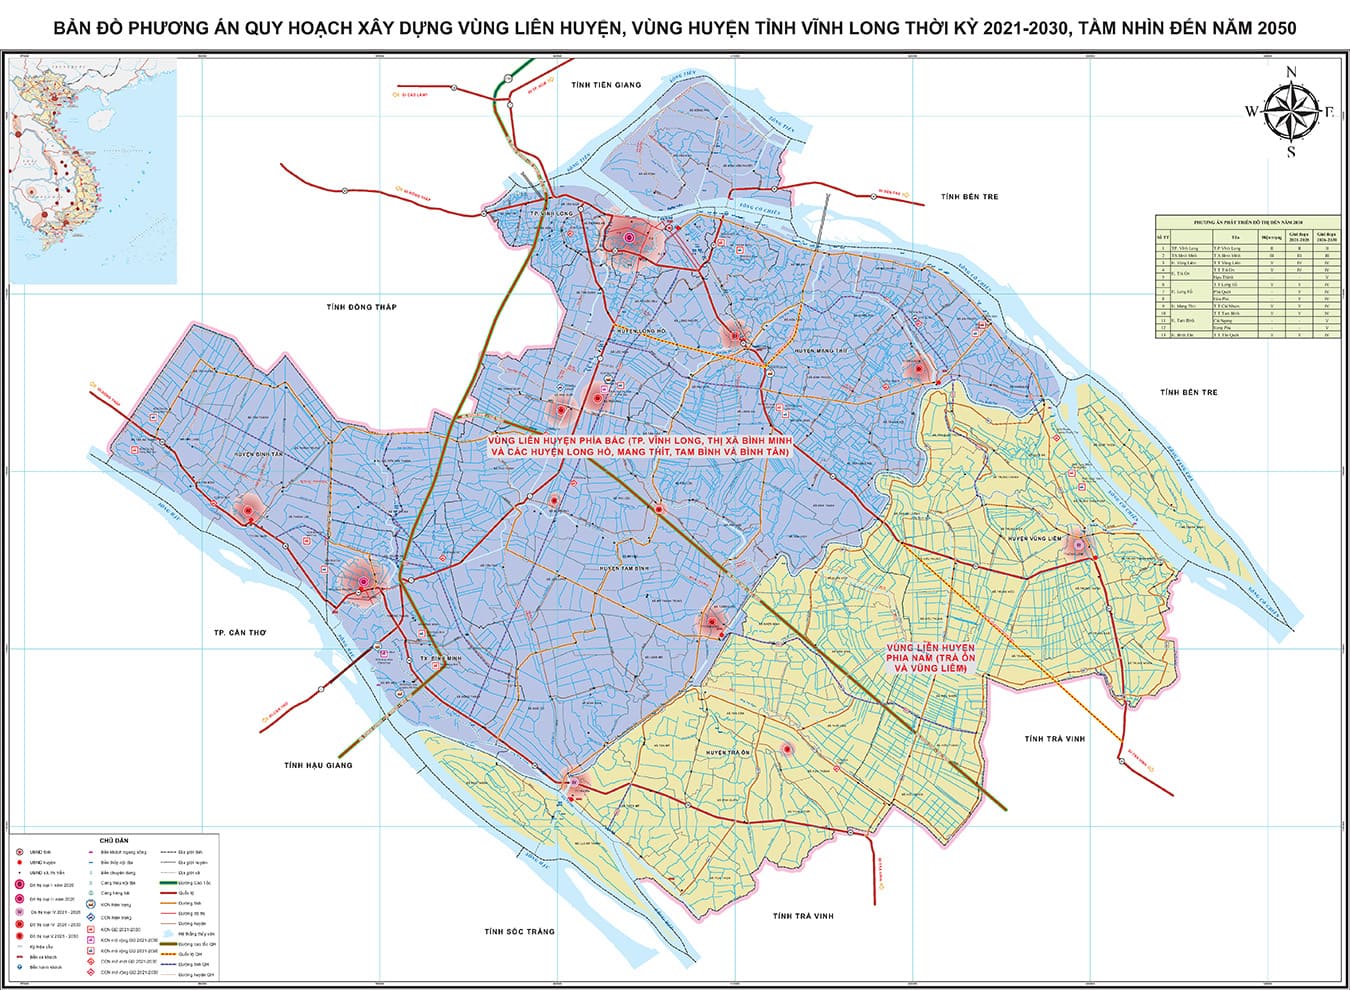 Bản đồ quy hoạch vùng liên huyện, vùng huyện tỉnh Vĩnh Long